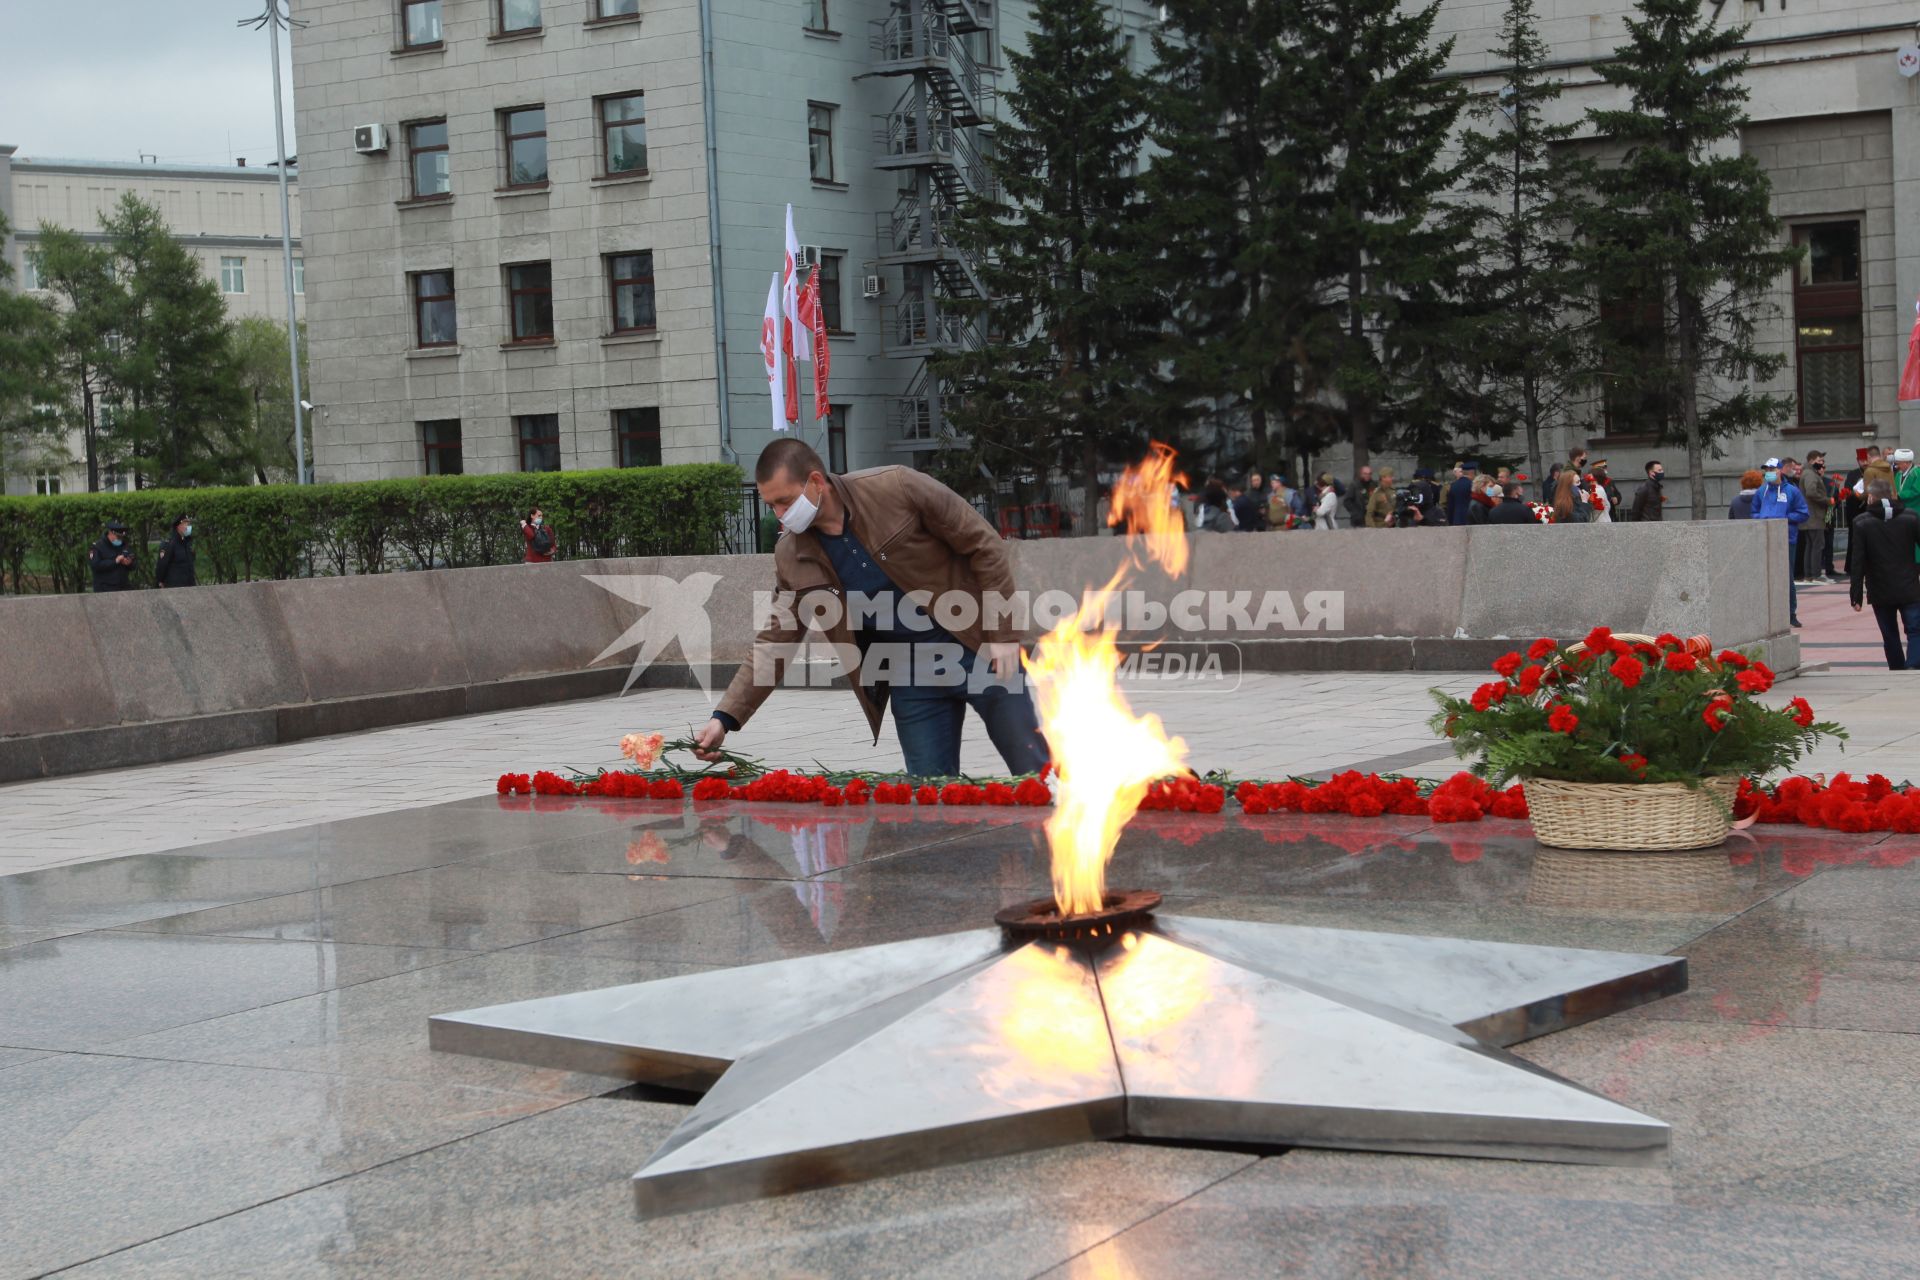 Иркутск. Мужчина у мемориала`Вечный огонь` во время празднования Дня Победы.